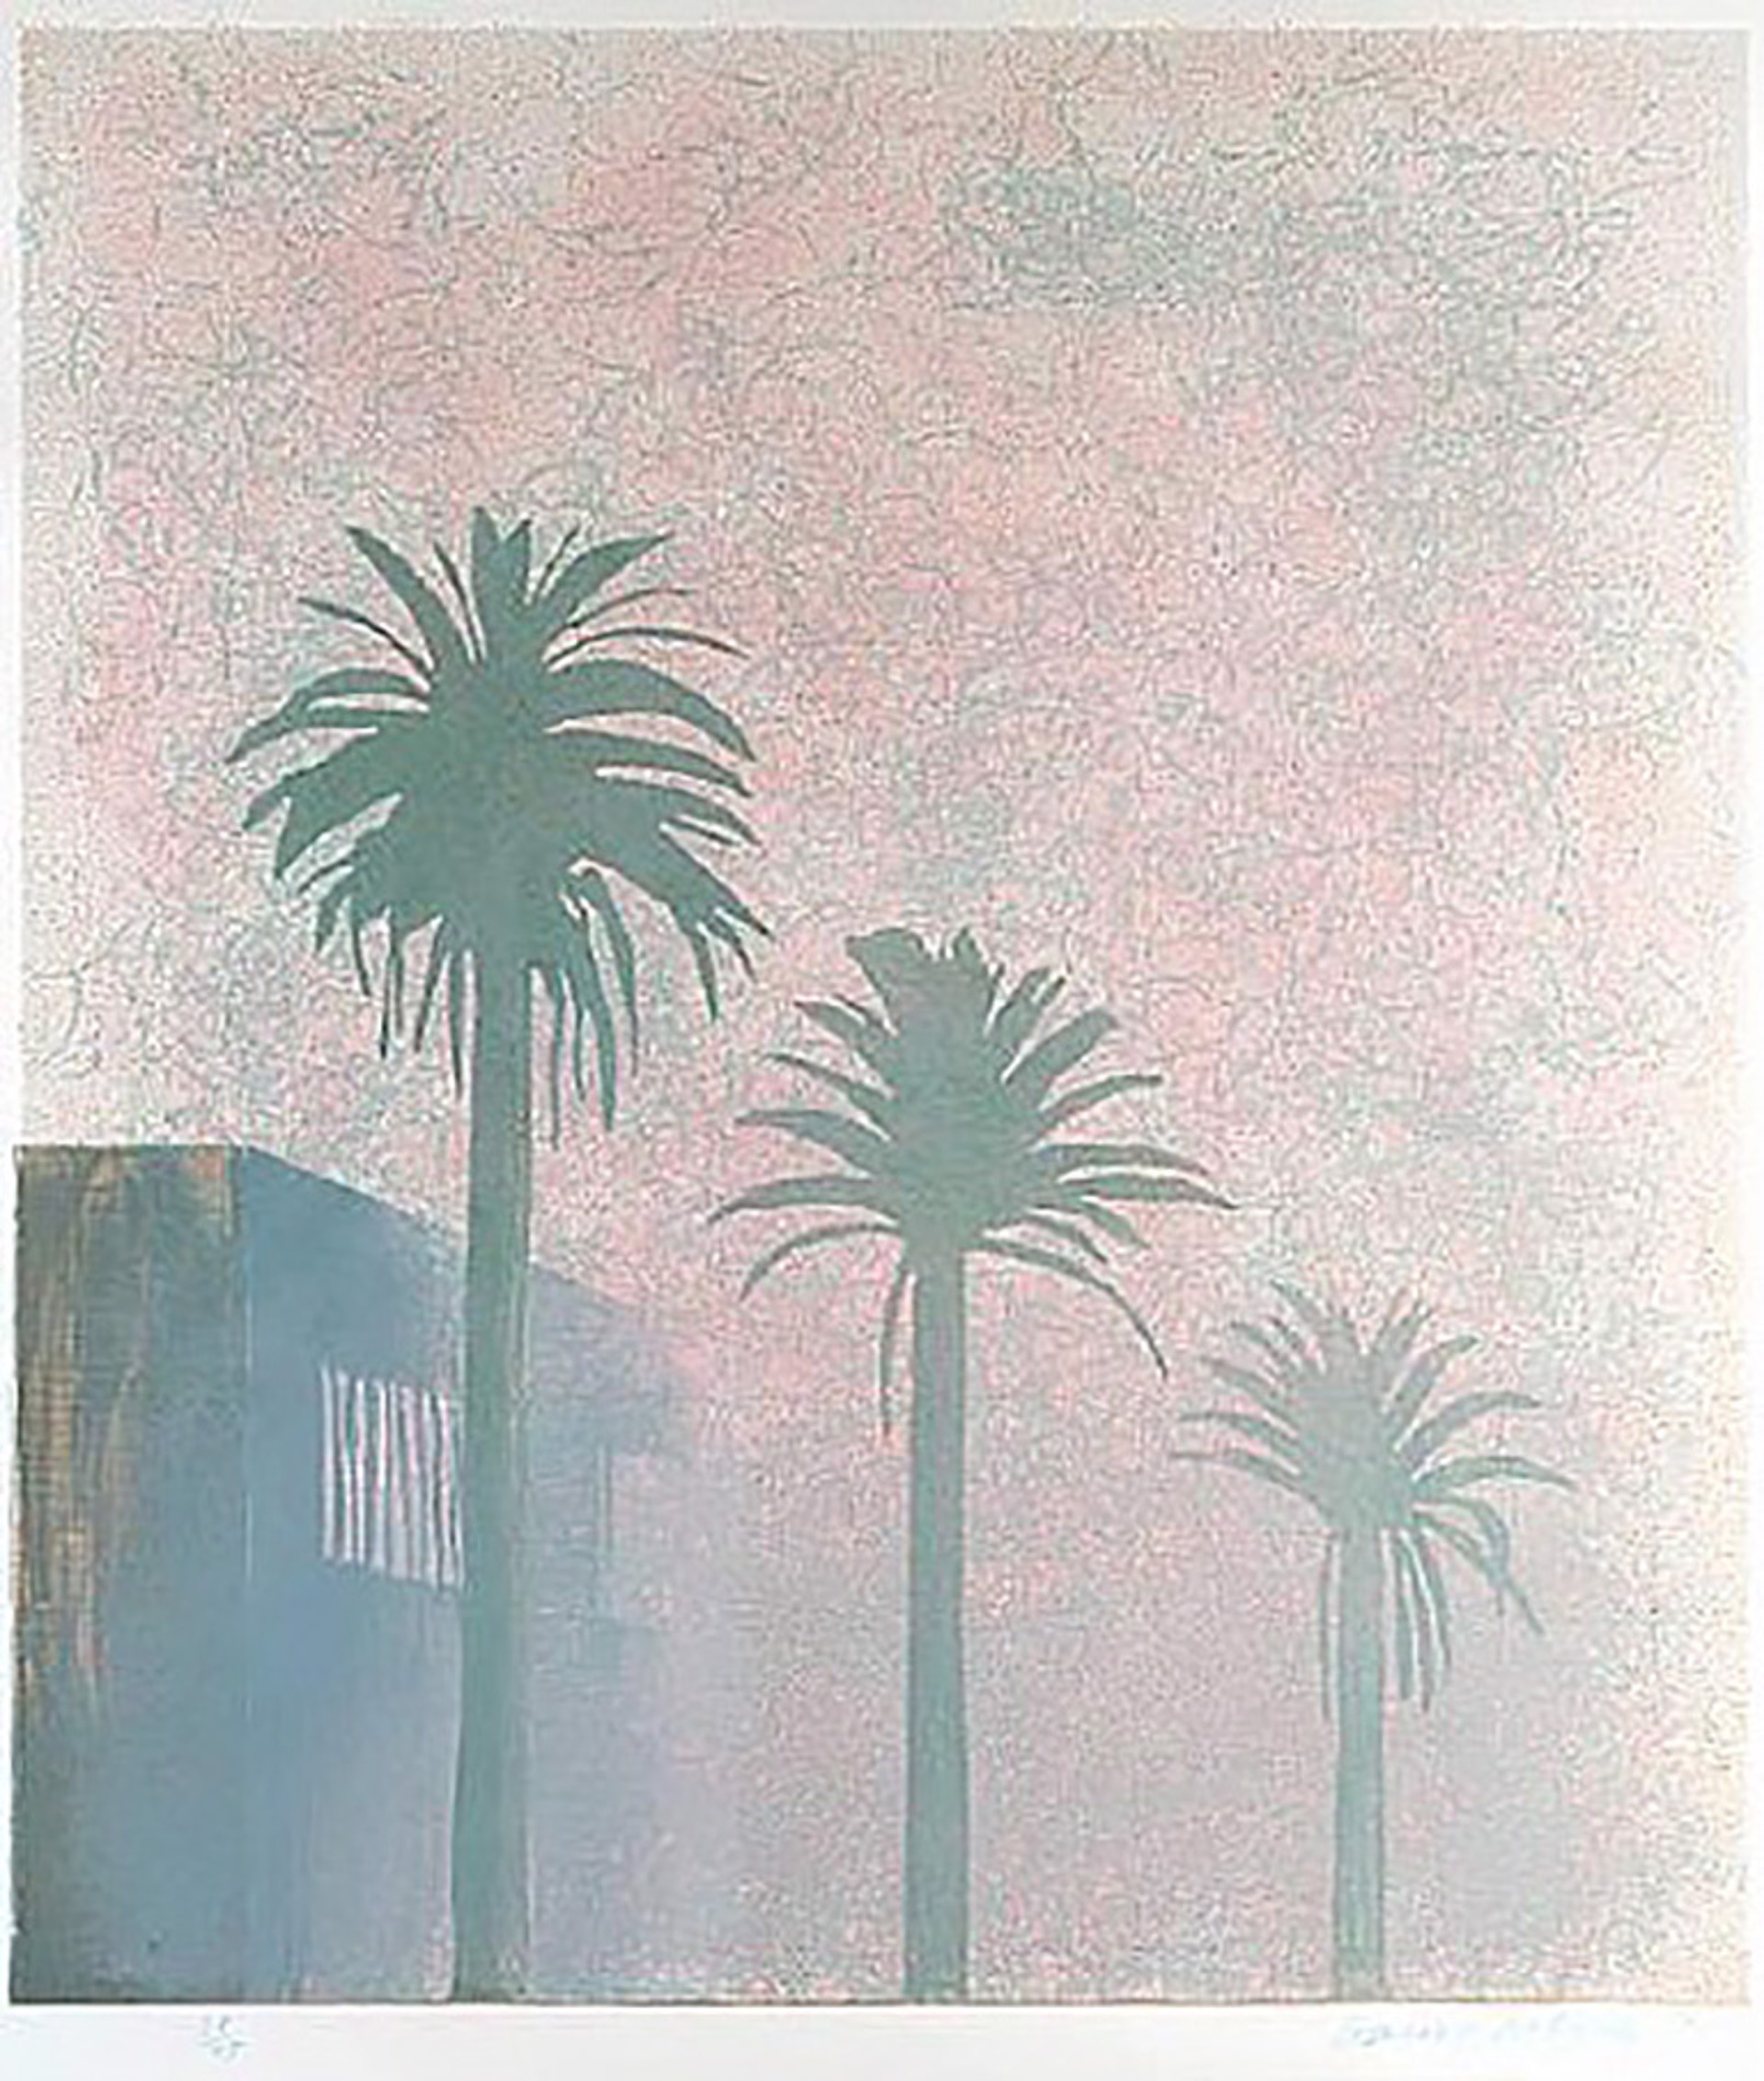 Mist by David Hockney